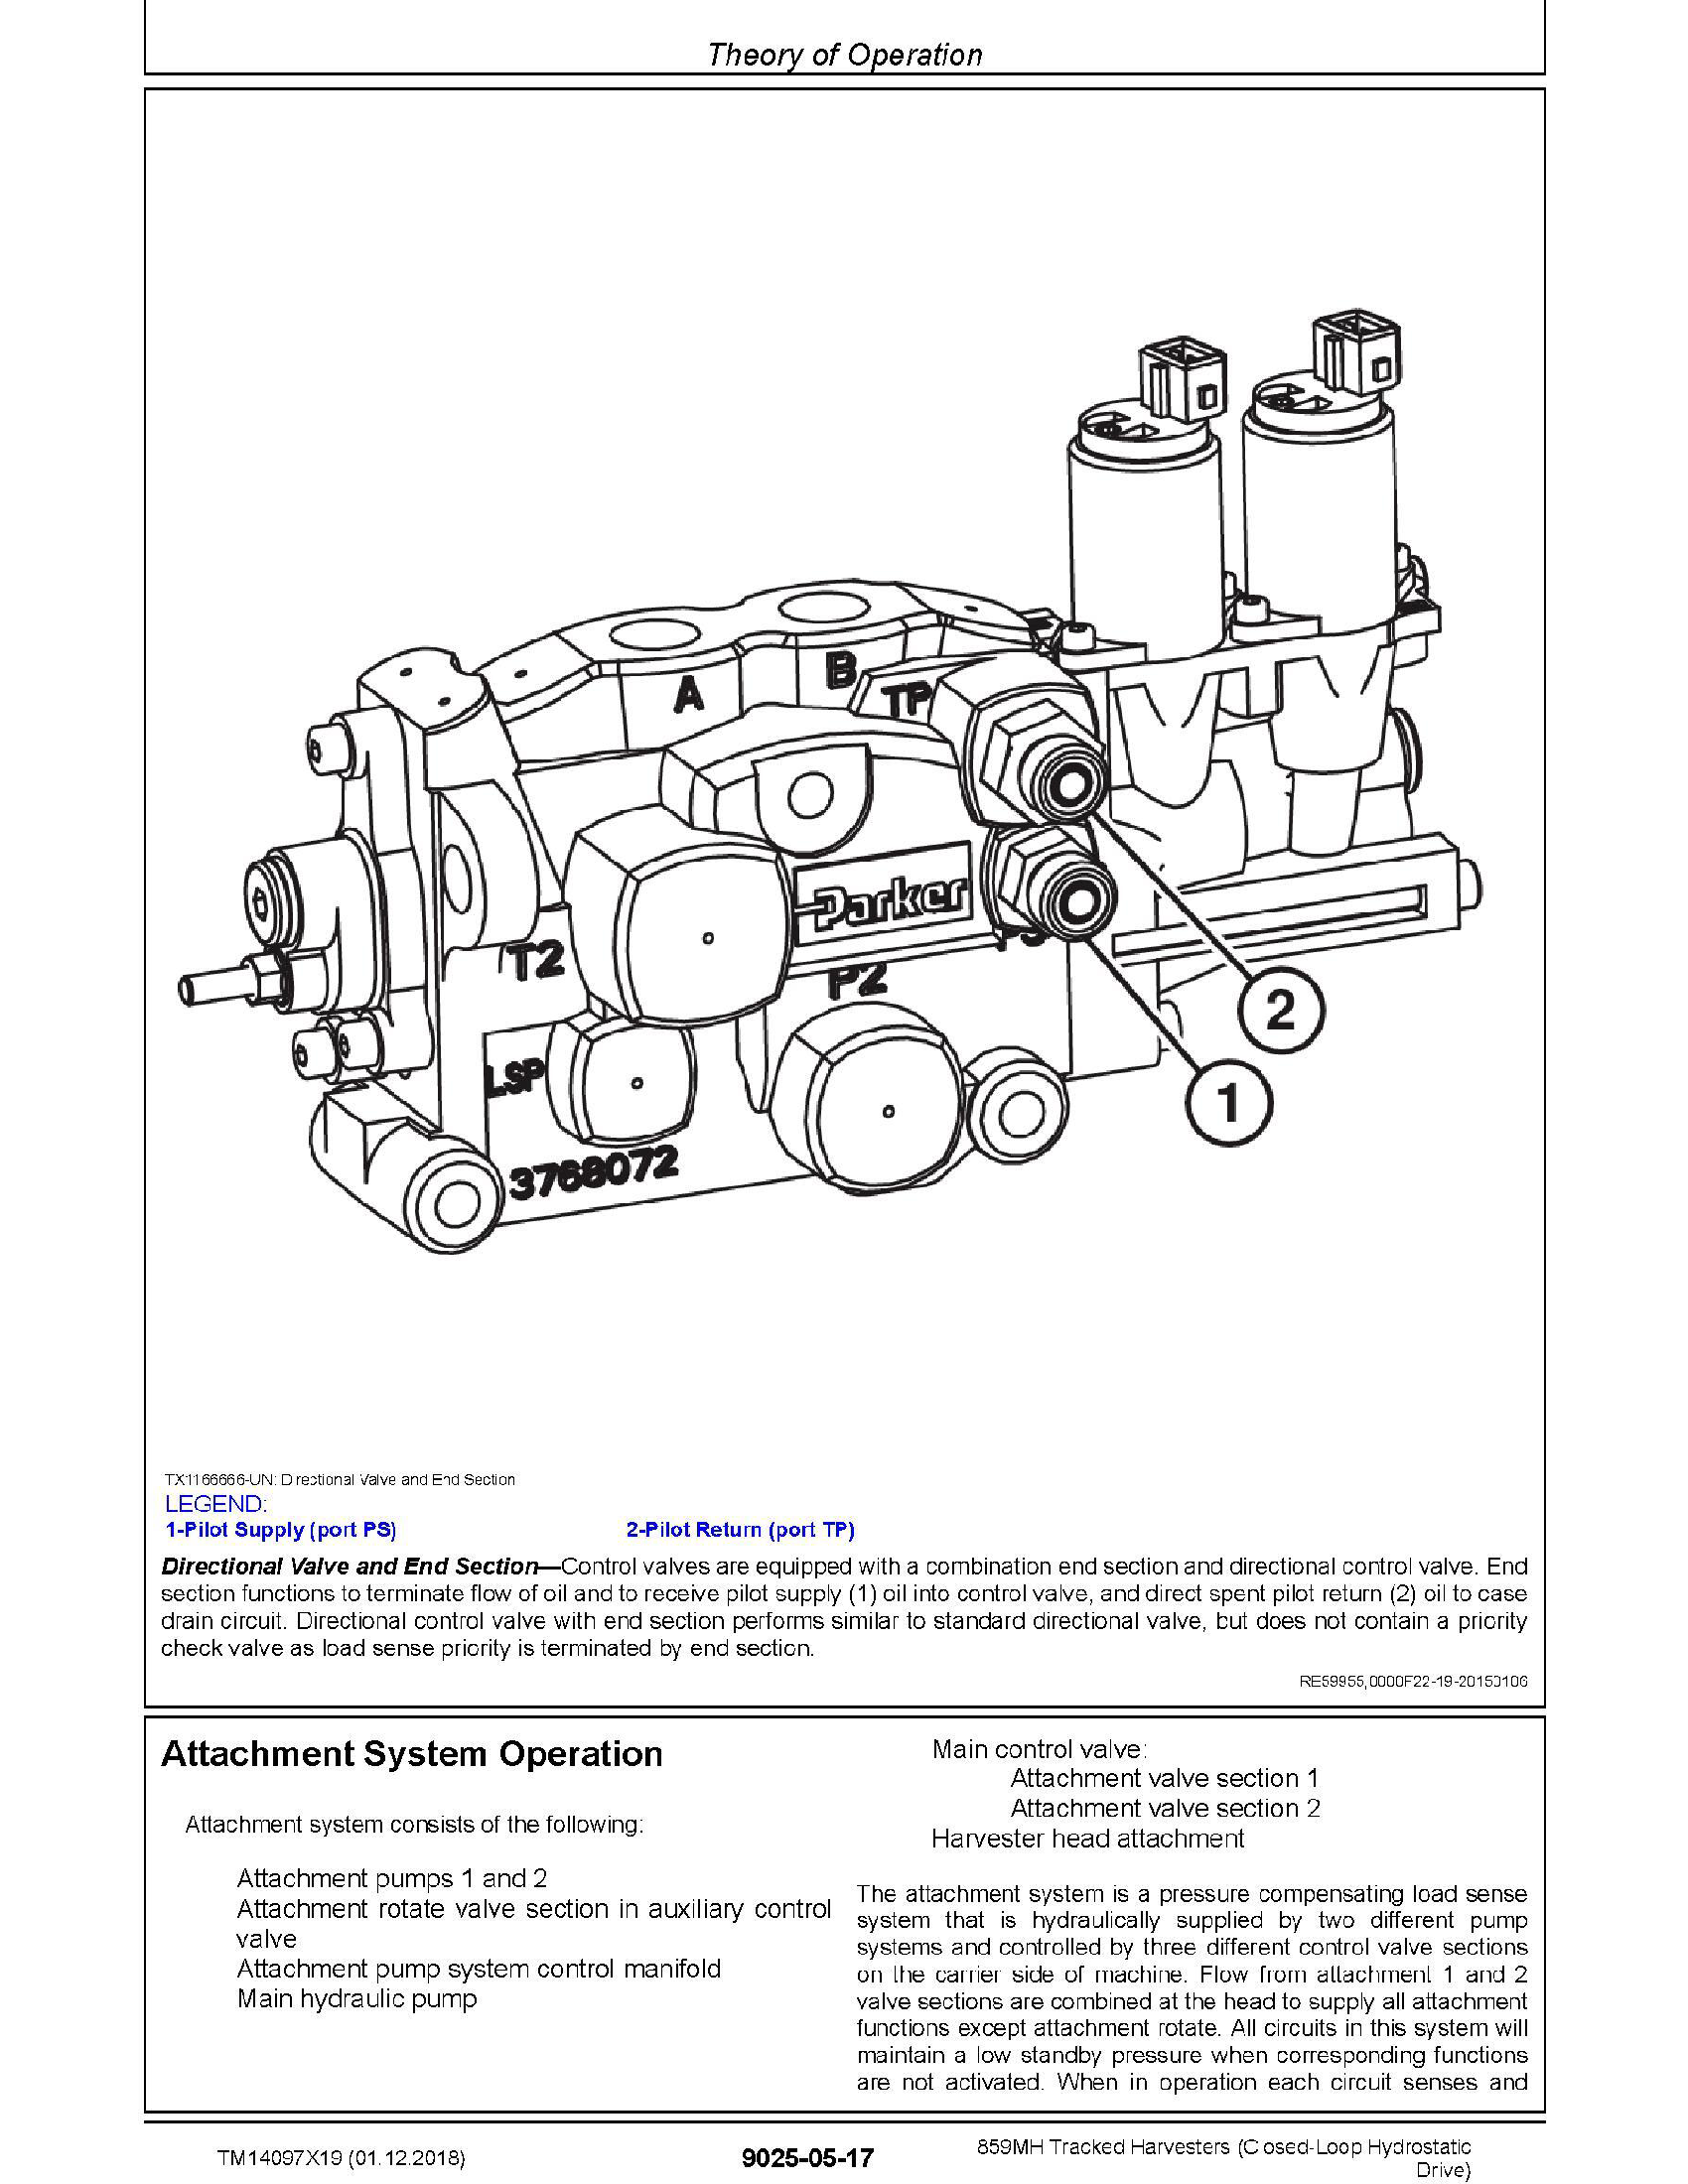 John Deere 1725 manual pdf